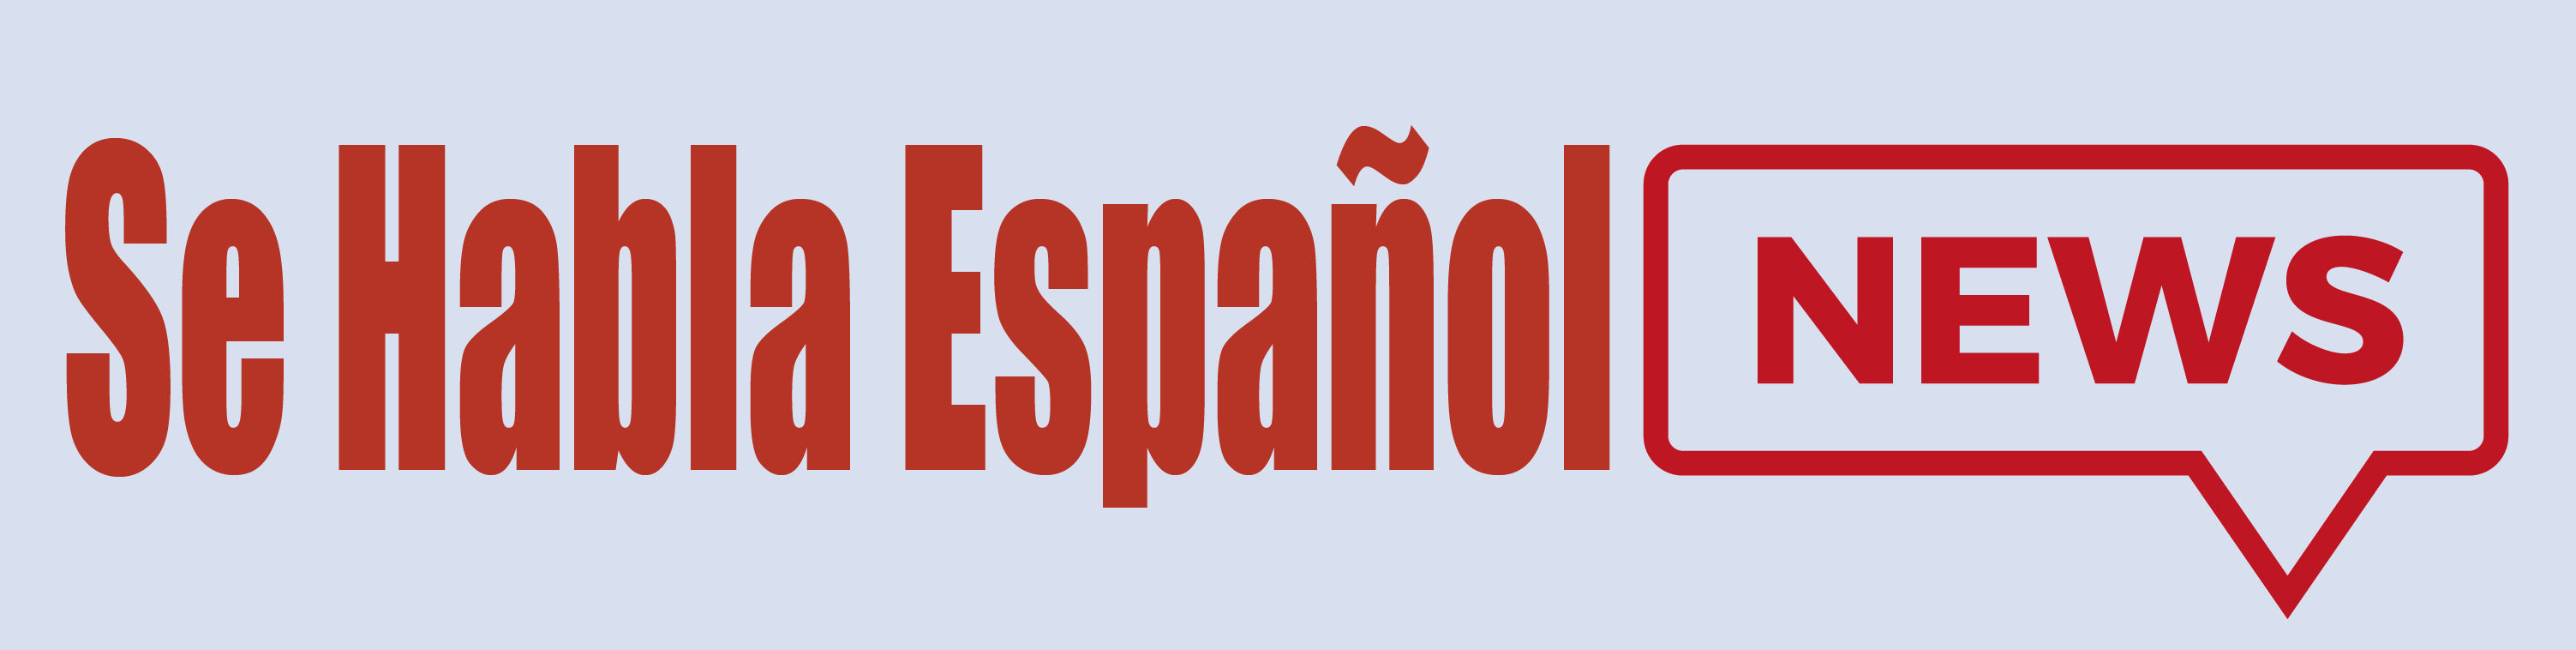 Se Habla Espanol News